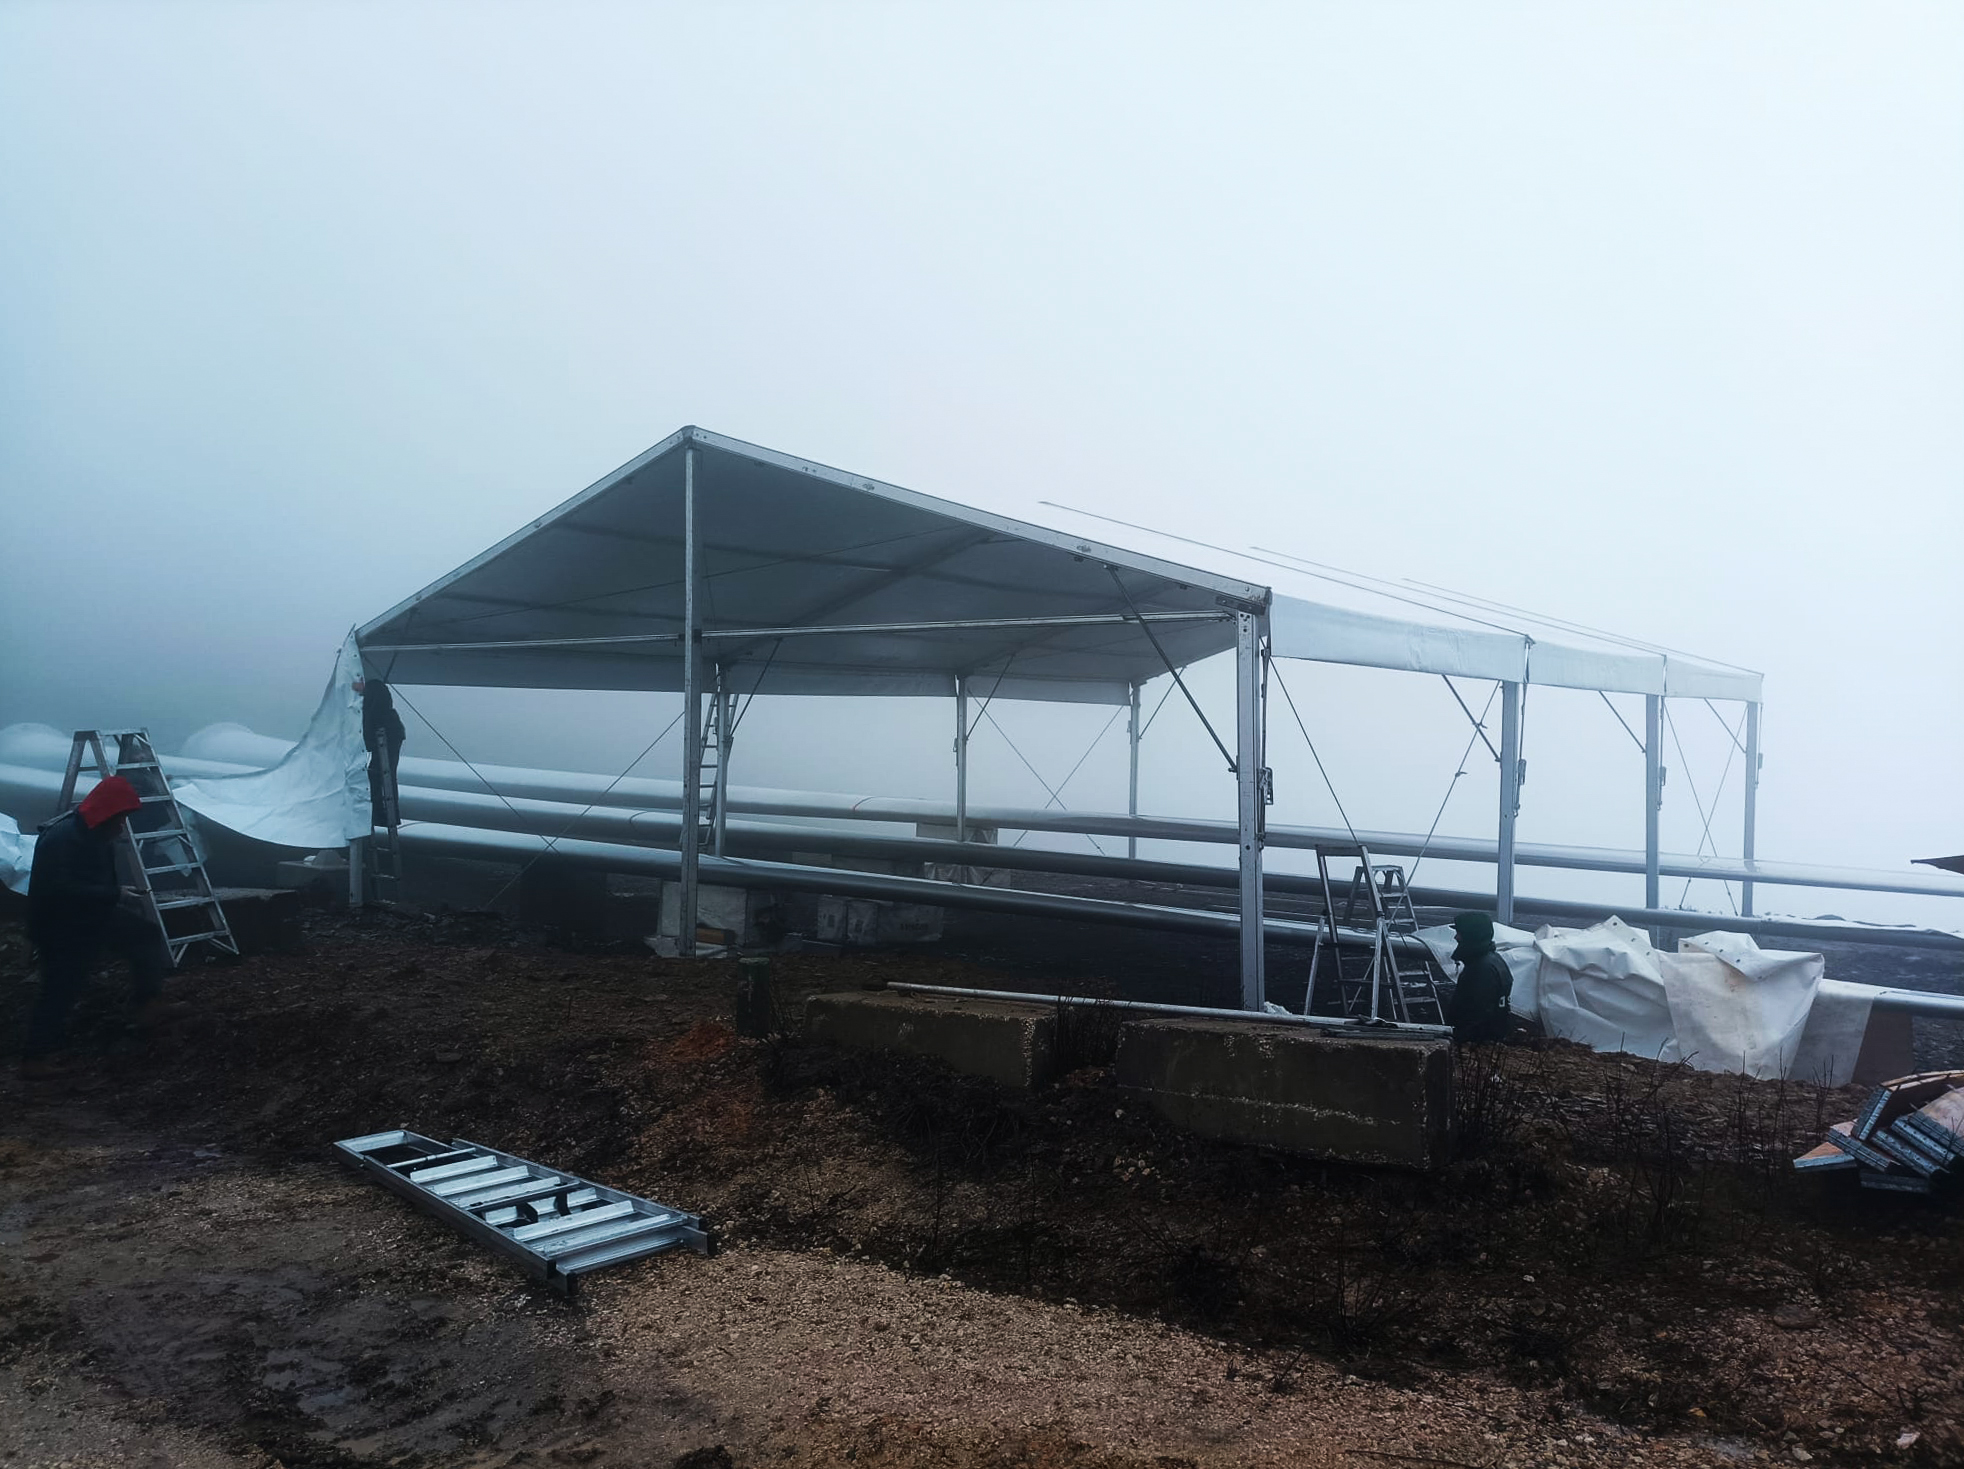 Montagem de tenda duas águas opaca para manutenção de pás eólicas da empresa Vestas, em Pampilhosa da Serra.